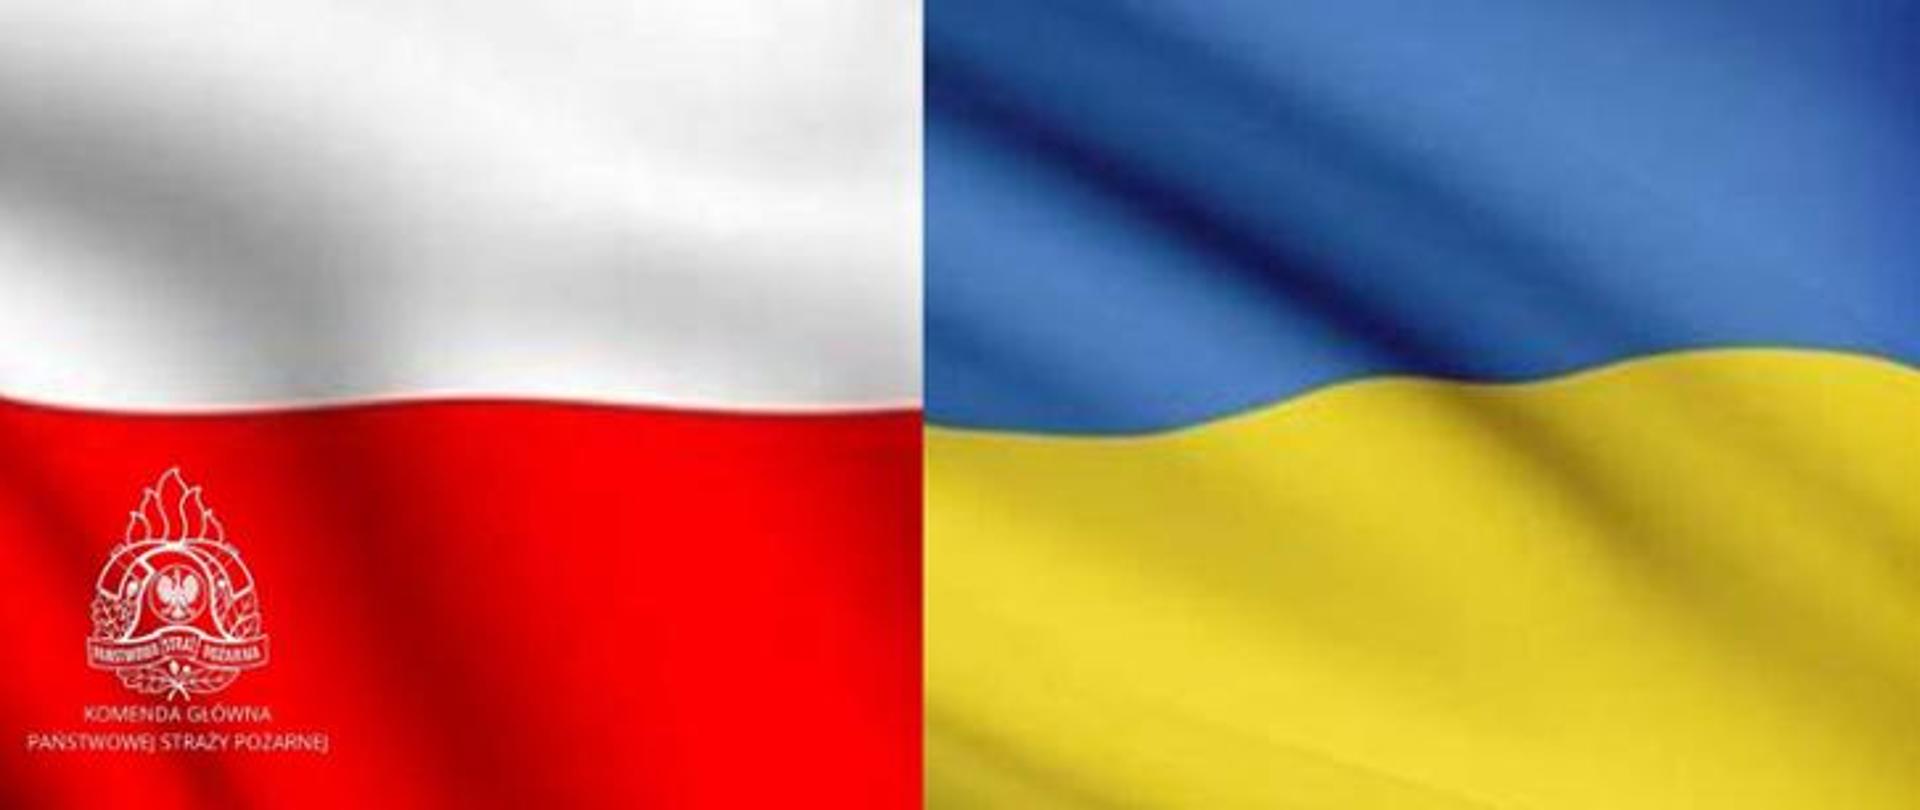 Na grafice obok siebie flaga Polski i Ukrainy. Na czerwonym pasie polskiej flagi logo PSP.